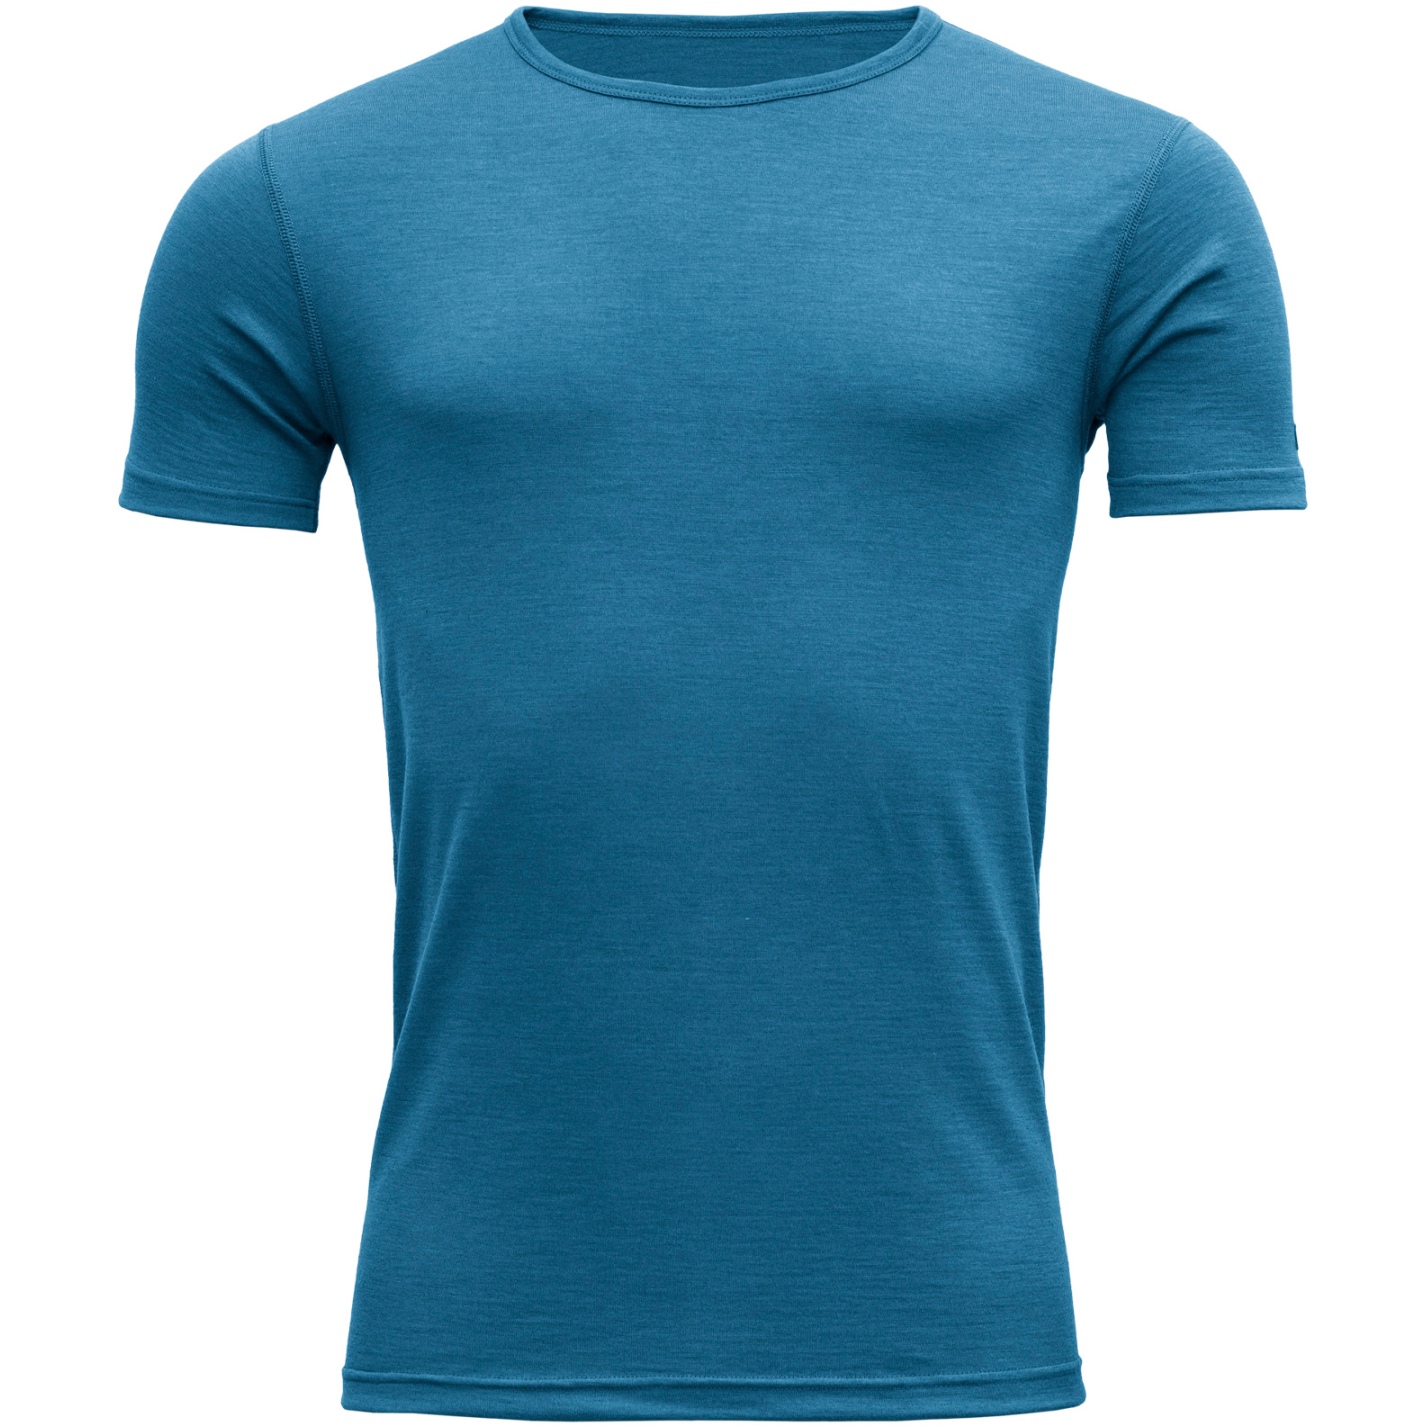 Bild von Devold Breeze Merino 150 T-Shirt Herren - 258 Blue Melange